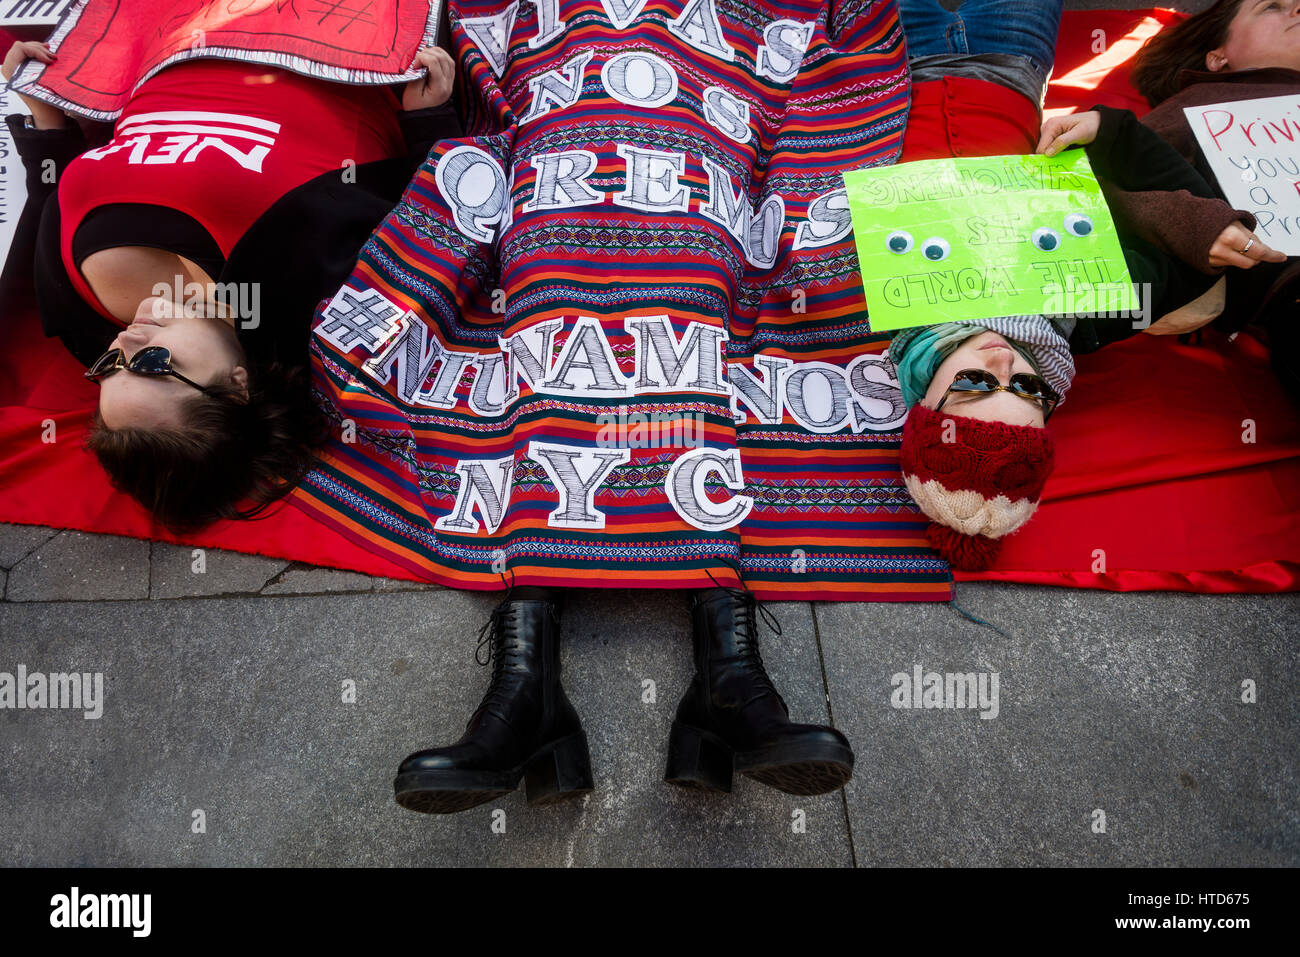 Nueva York, Estados Unidos, 8 de marzo de 2017 - La mujer marcó el Día Internacional de la mujer - un día sin una mujer, con un rally en Washington Square Park, seguido por una marcha. Muchas mujeres usaban rojo y tomó el día libre como una huelga general. ©Stacy Walsh Rosenstock/Alamy Live News Foto de stock